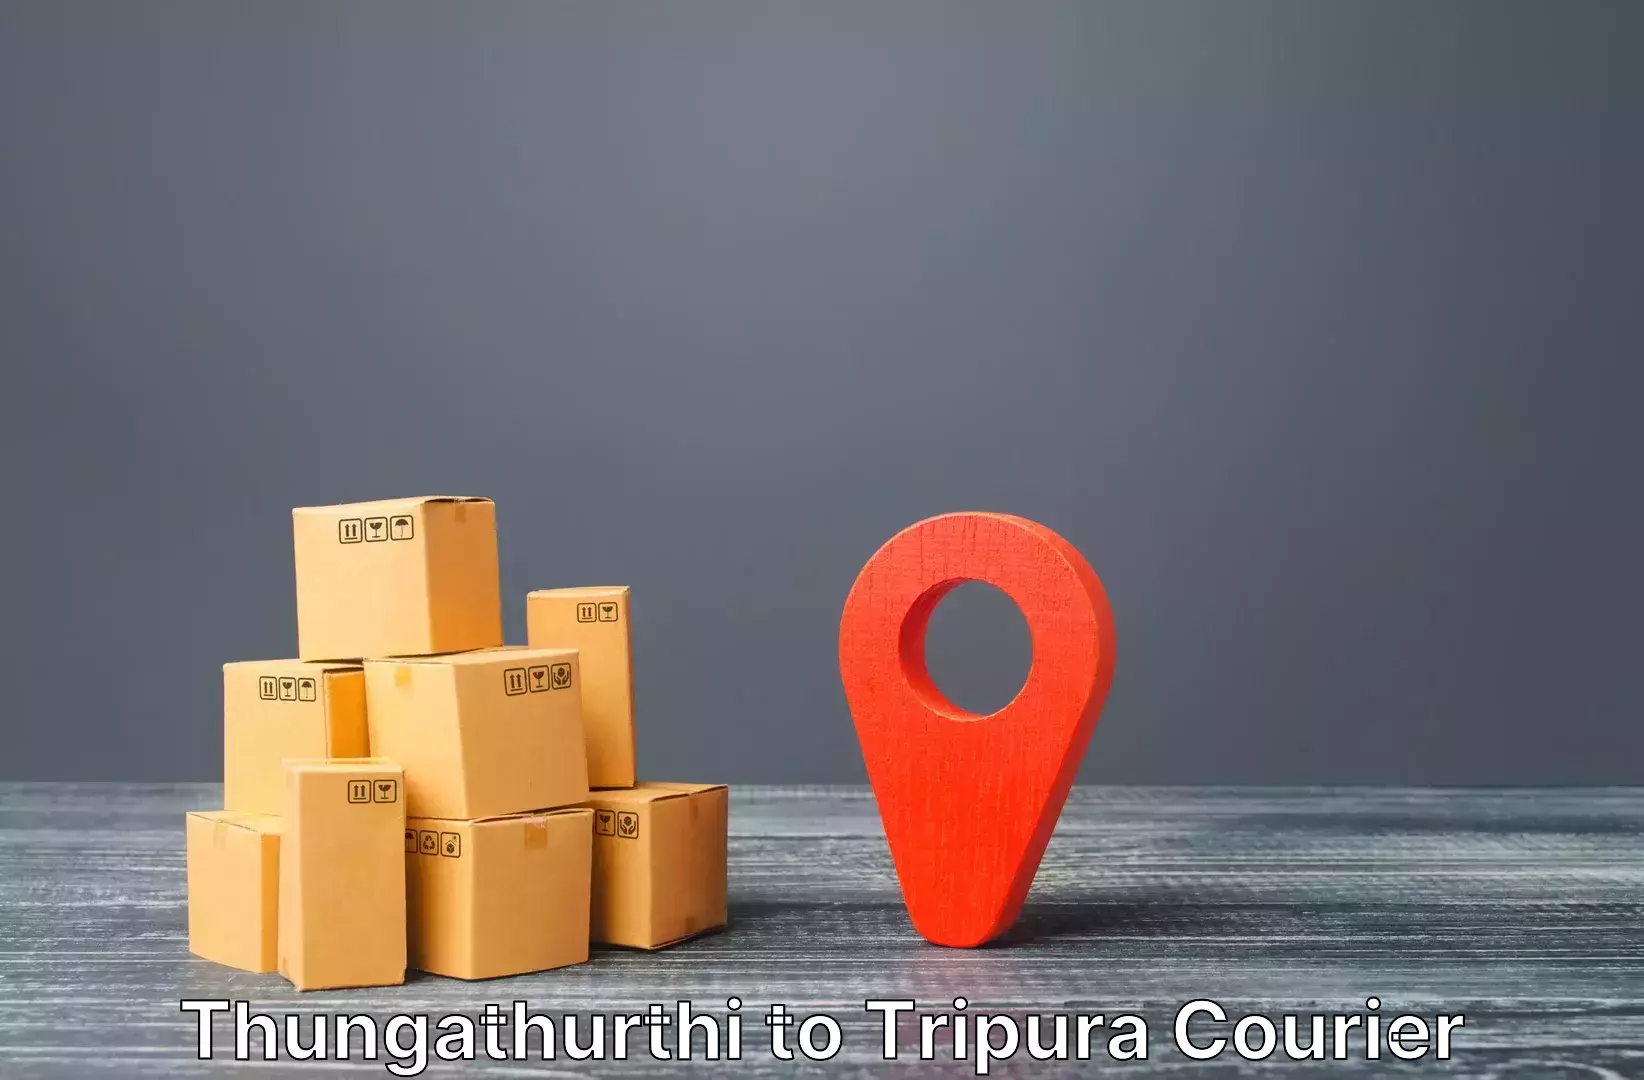 Baggage delivery technology Thungathurthi to Kamalpur